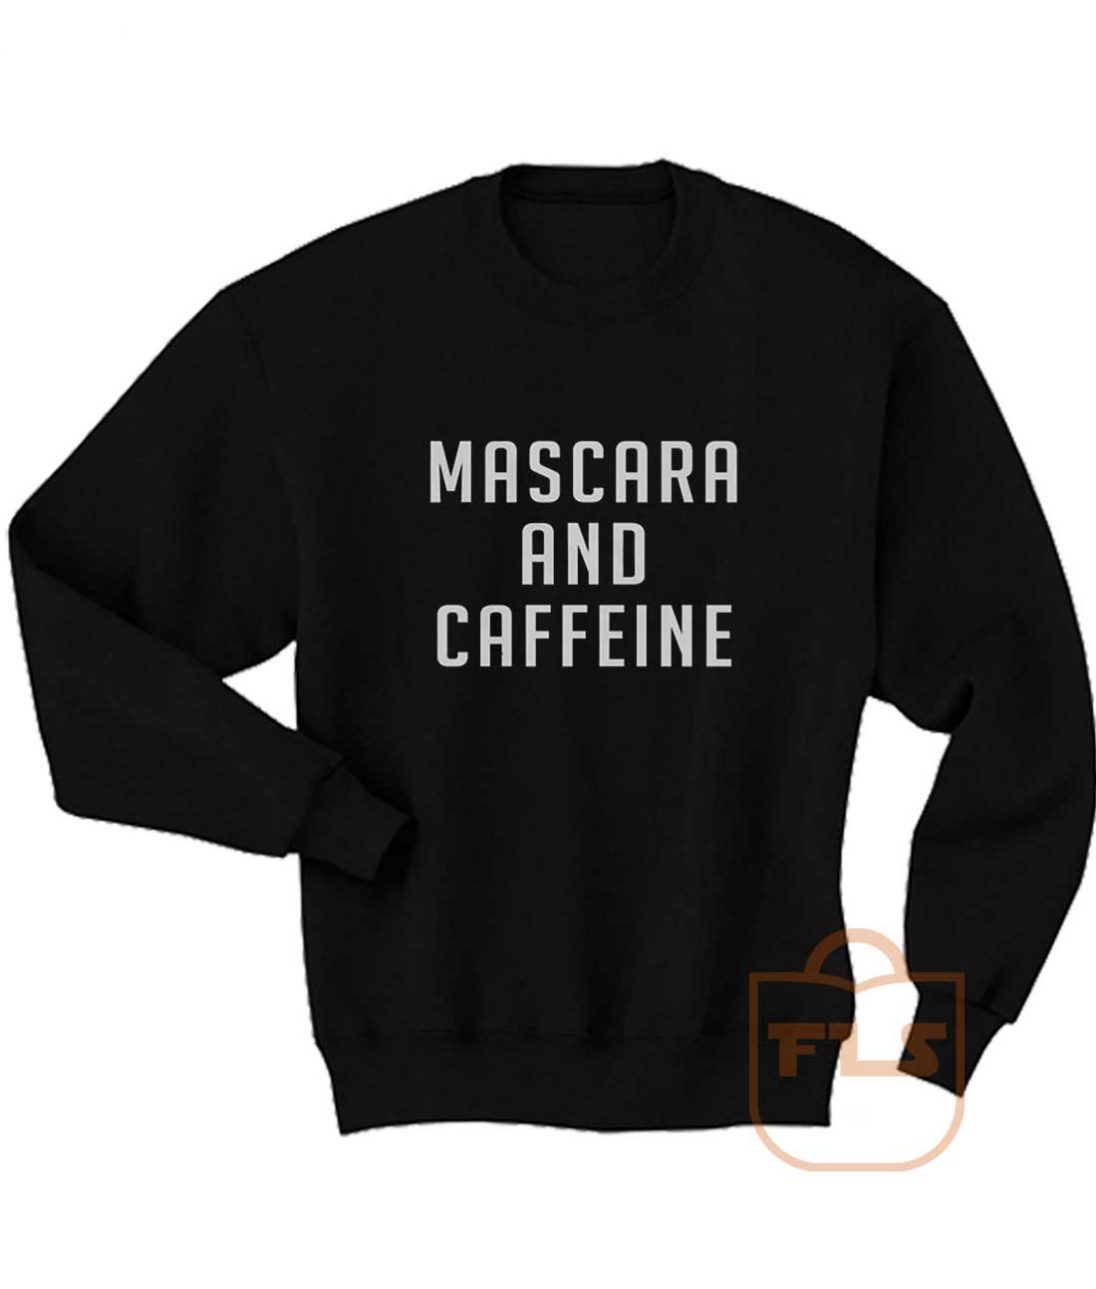 Mascara and Caffeine Sweatshirt - Ferolos.com - Cheap Crewneck